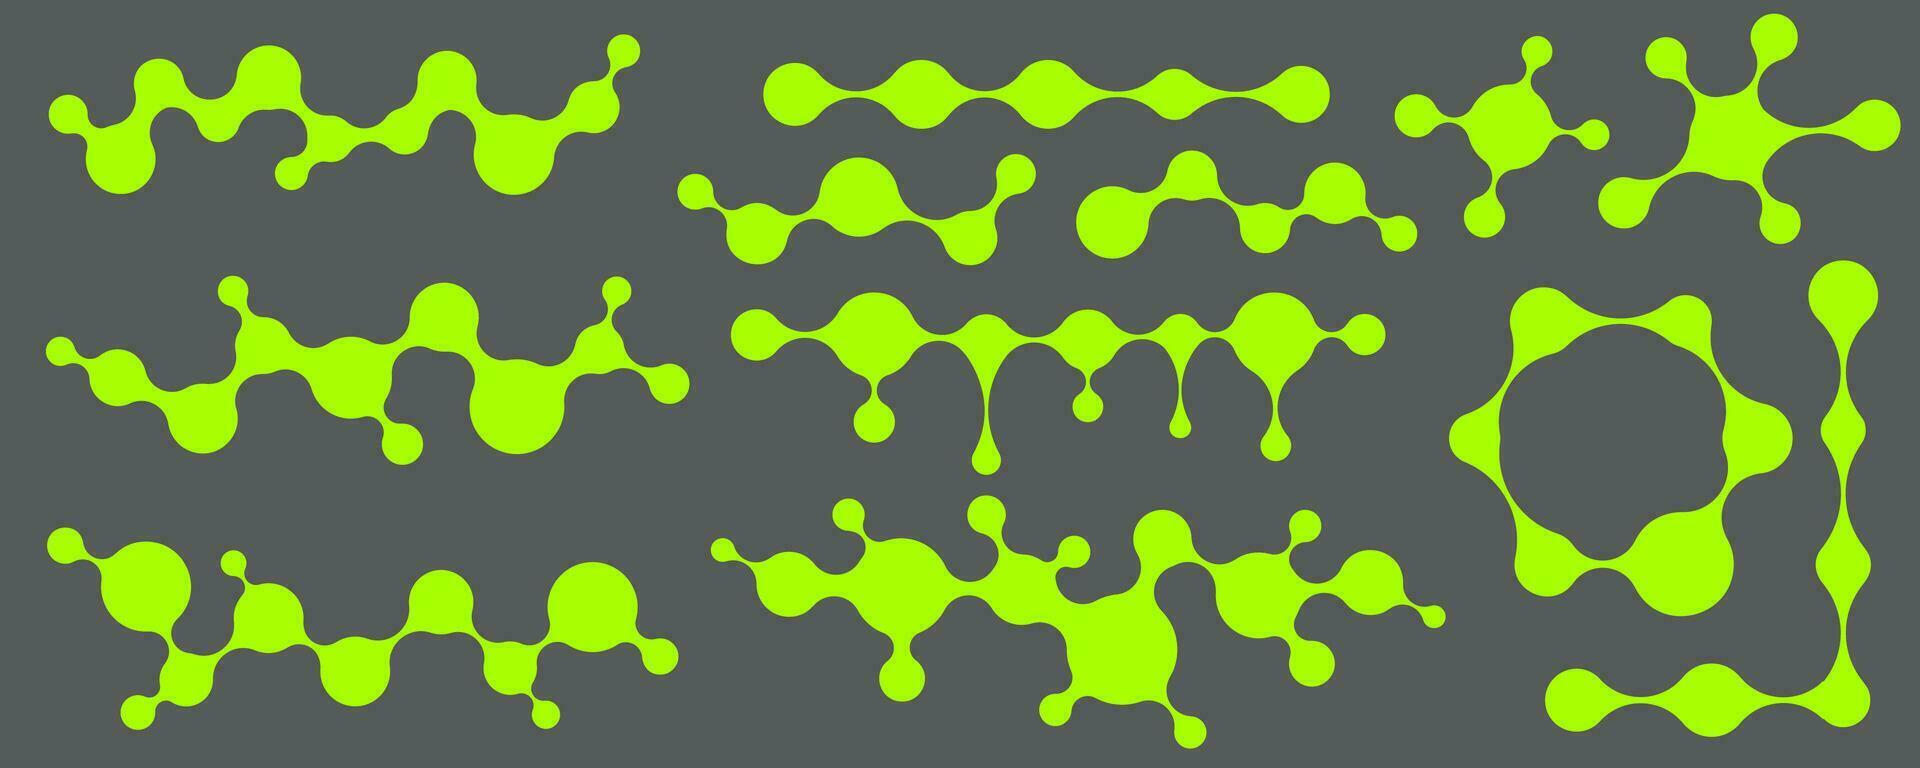 metaball conectado gotas formas en modelo. vector transformado fluido y círculos símbolo. circular pelotas en red. resumen geométrico orgánico molecular burbujas